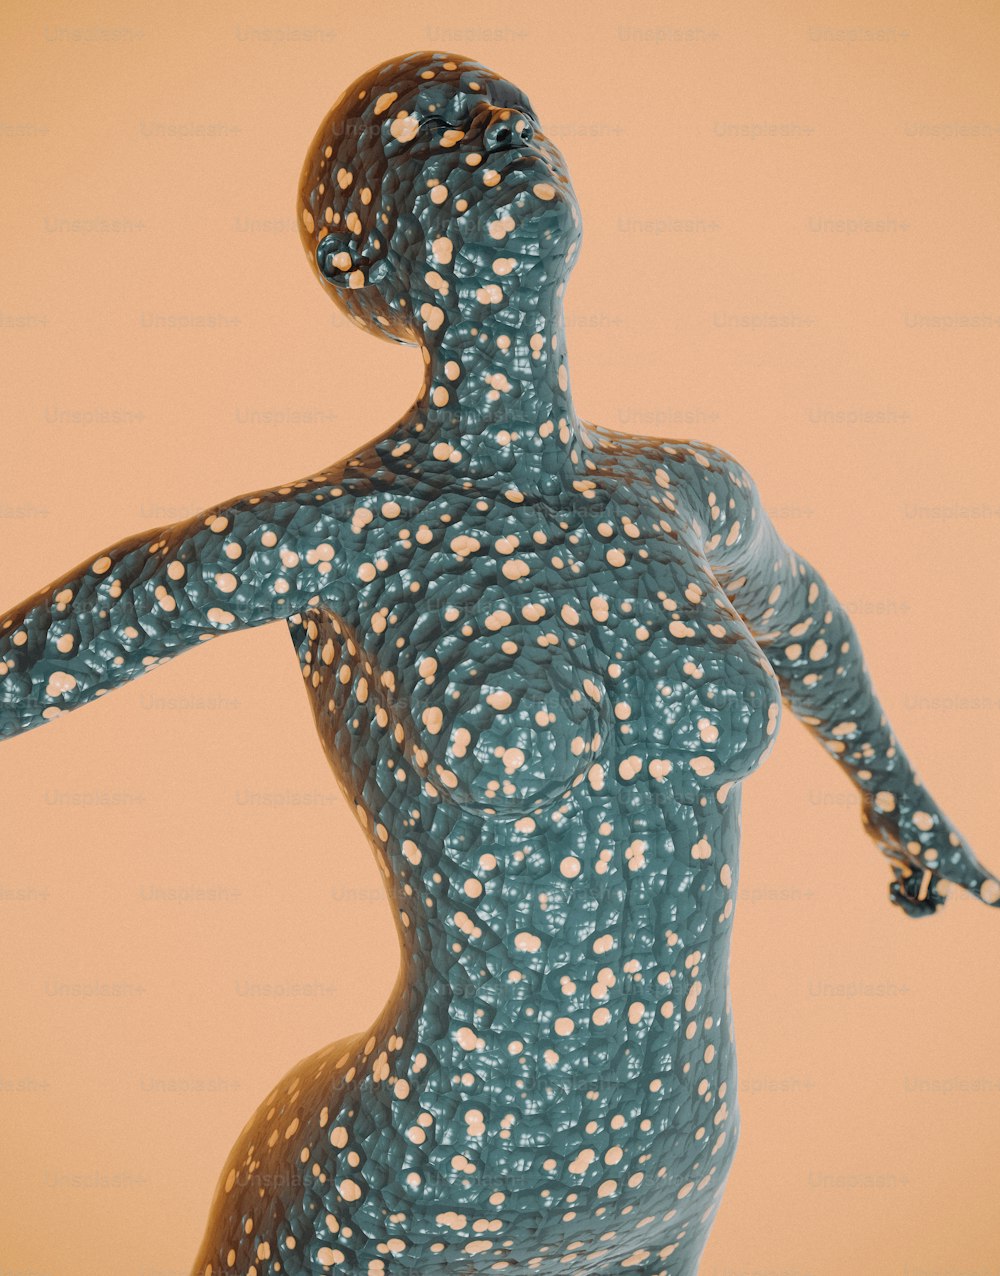 une sculpture d’une femme avec des points sur le corps